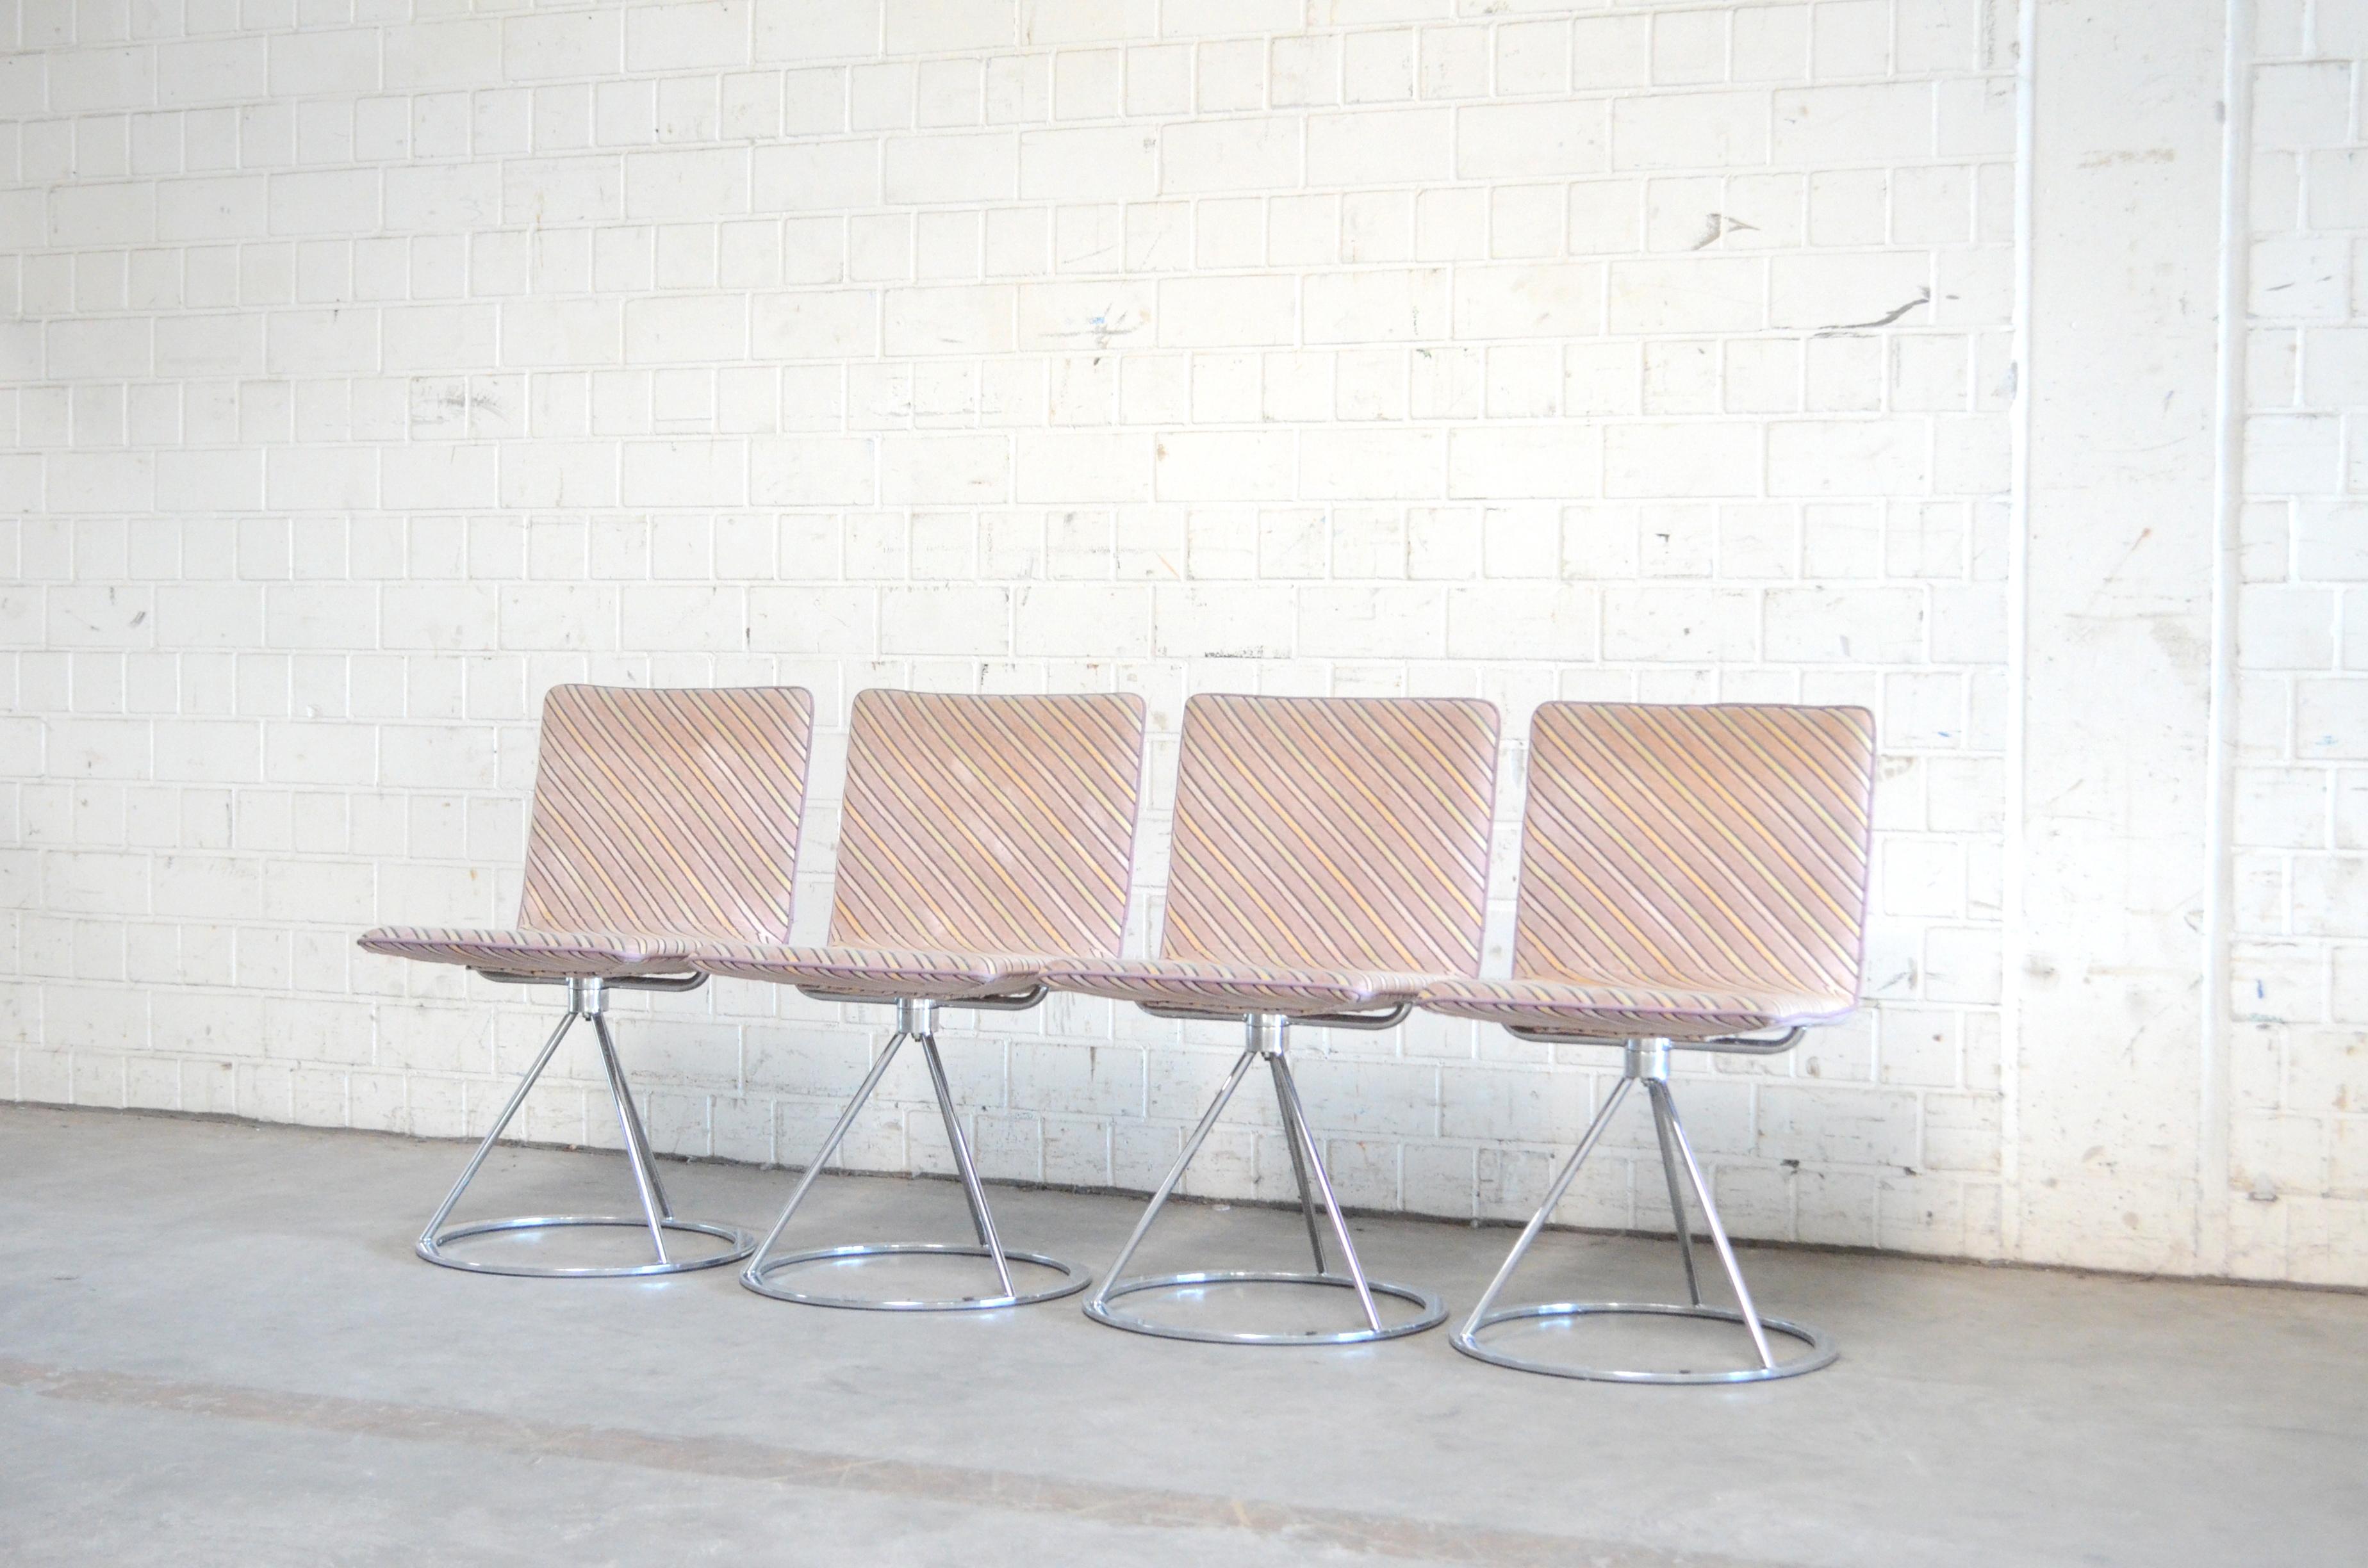 Diese italienischen Designstühle stammen aus den 1980er Jahren und wurden von Salvati e Tresoldi entworfen und von Saporiti Italia hergestellt.
Ein moderner Design-Stuhl mit drehbarem Fuß aus verchromtem Stahl und gepolstertem Sitz.
Der Stoff ist